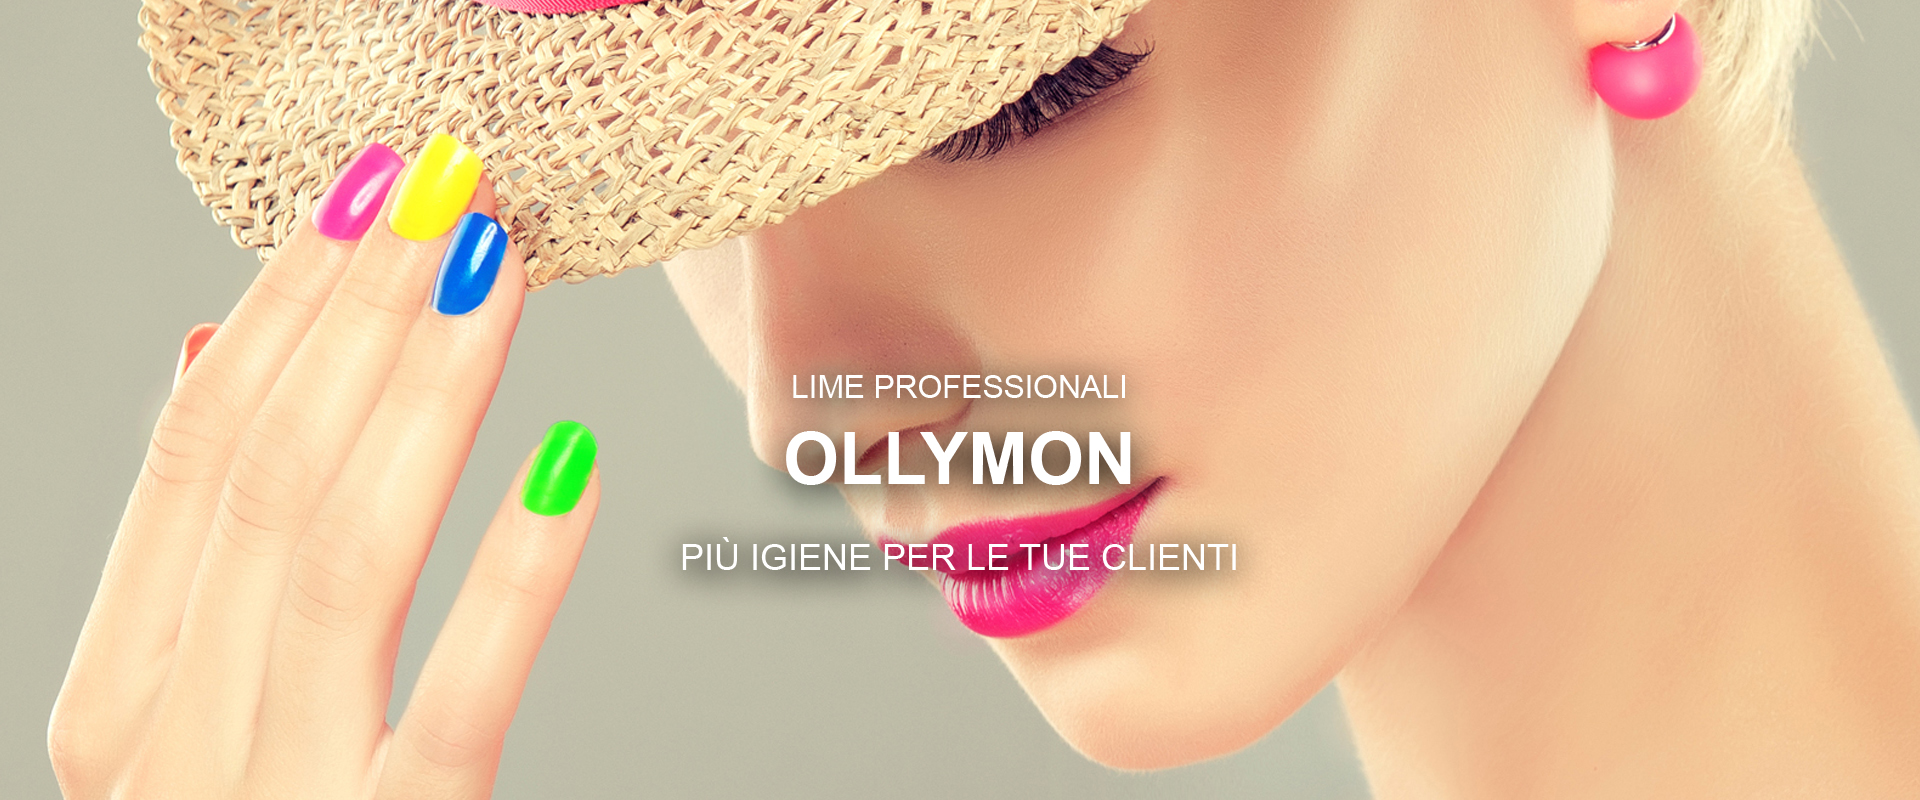 Ollymon